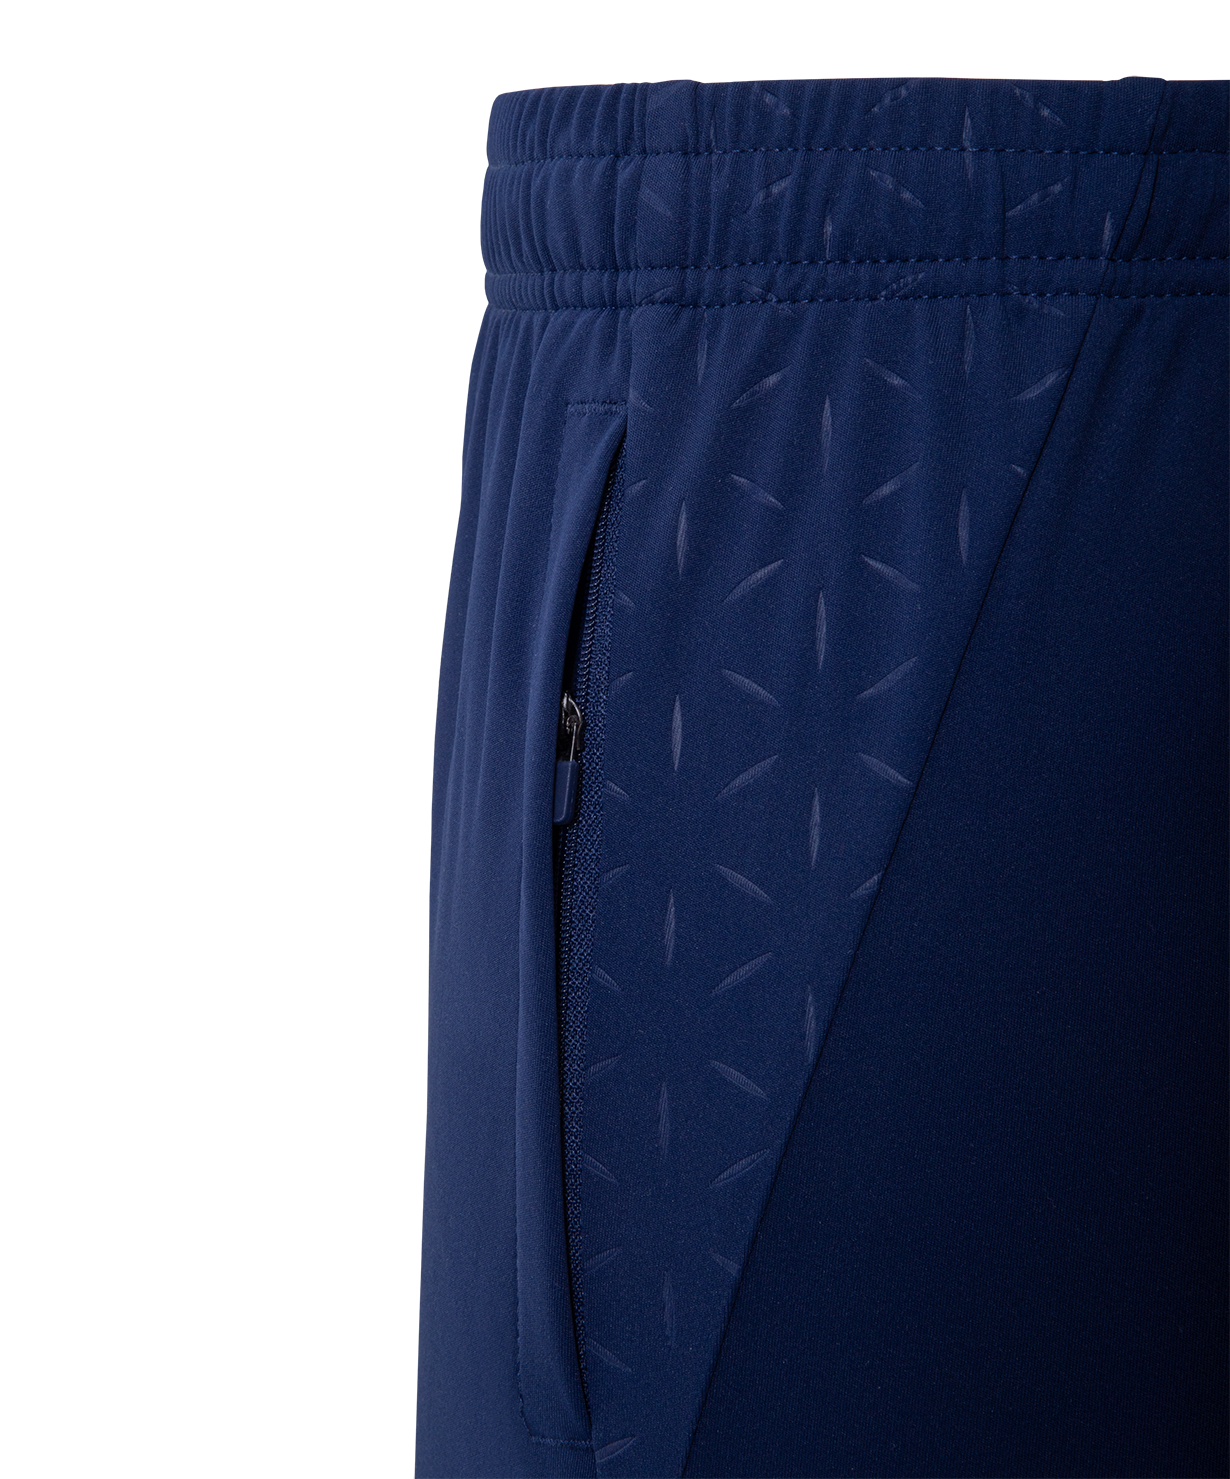 Реальное фото Шорты тренировочные NATIONAL PerFormDRY Training Shorts, темно-синий от магазина СпортСЕ